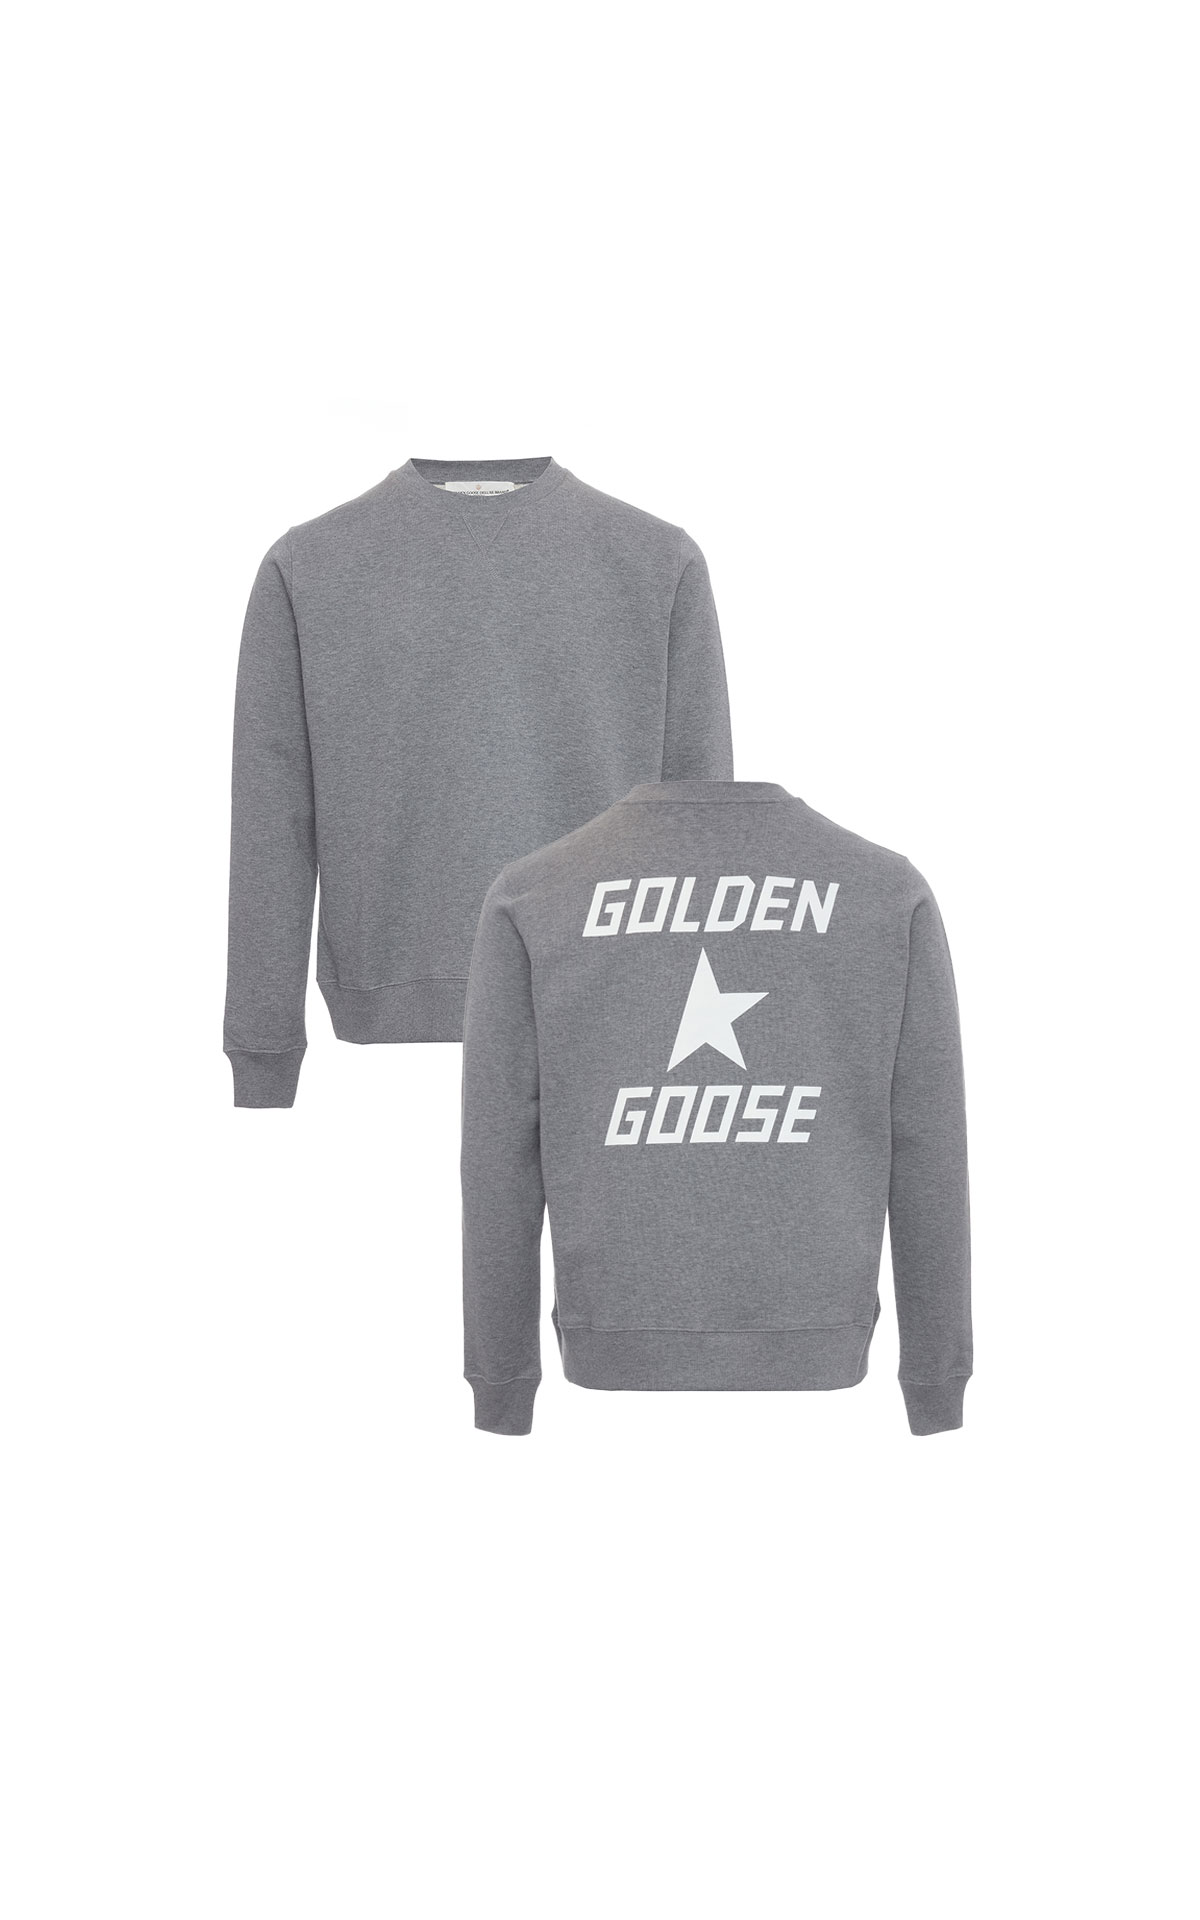 Golden Goose Sweatshirt from Bicester Village